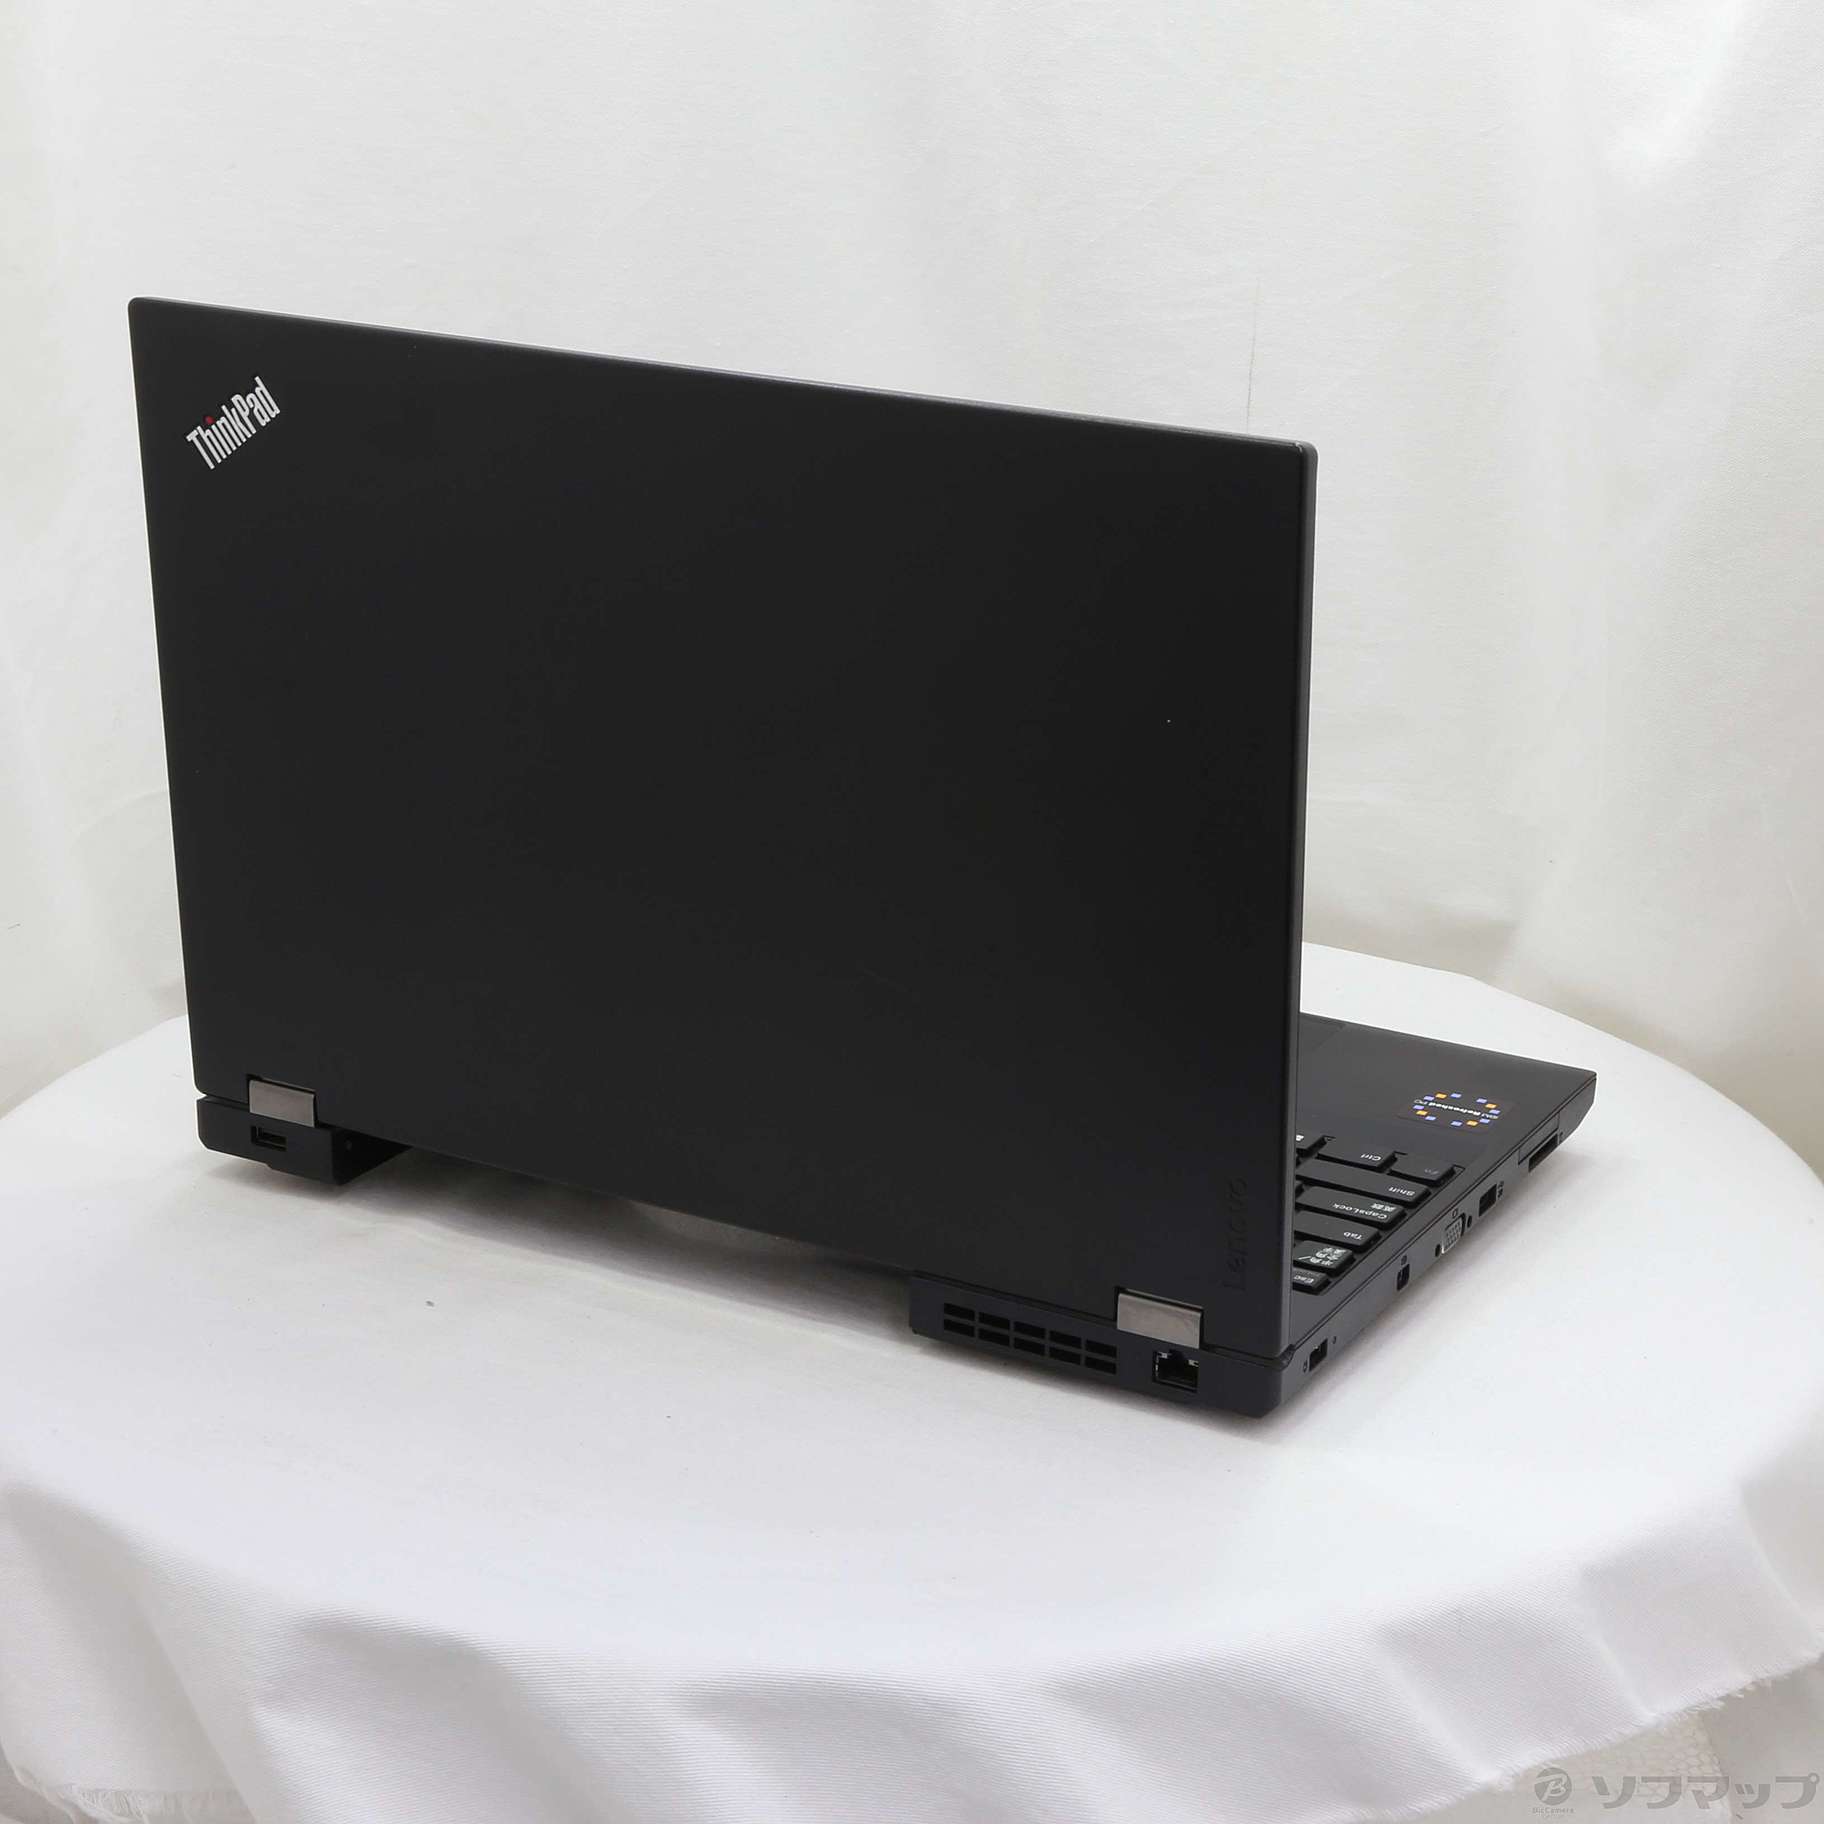 セール対象品 ThinkPad L570 20J9S0GM00 〔IBM Refreshed PC〕 〔Windows 10〕